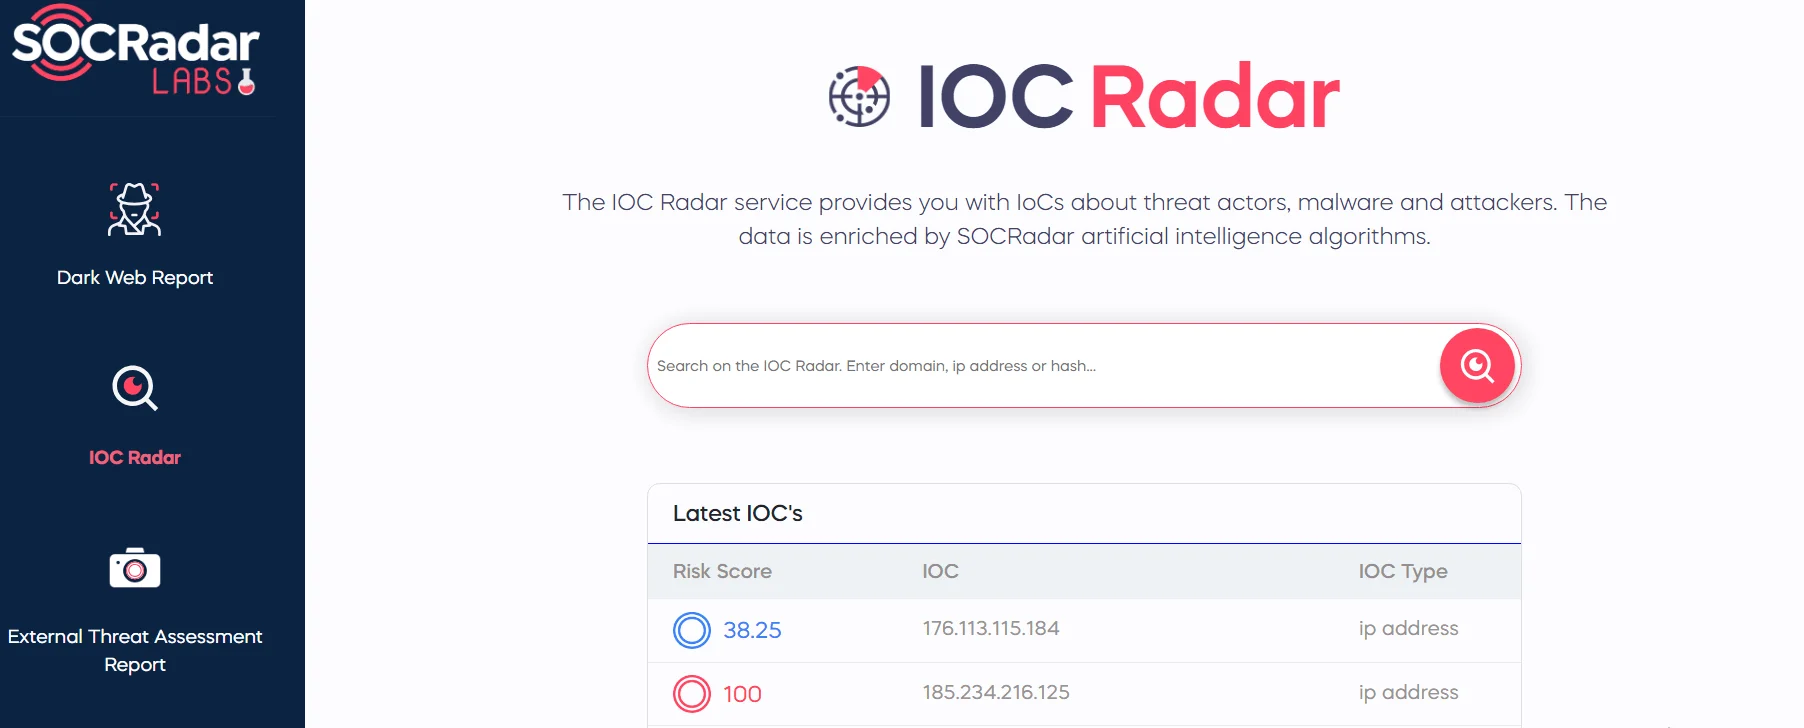 SOCRadar Lab's IoC Radar